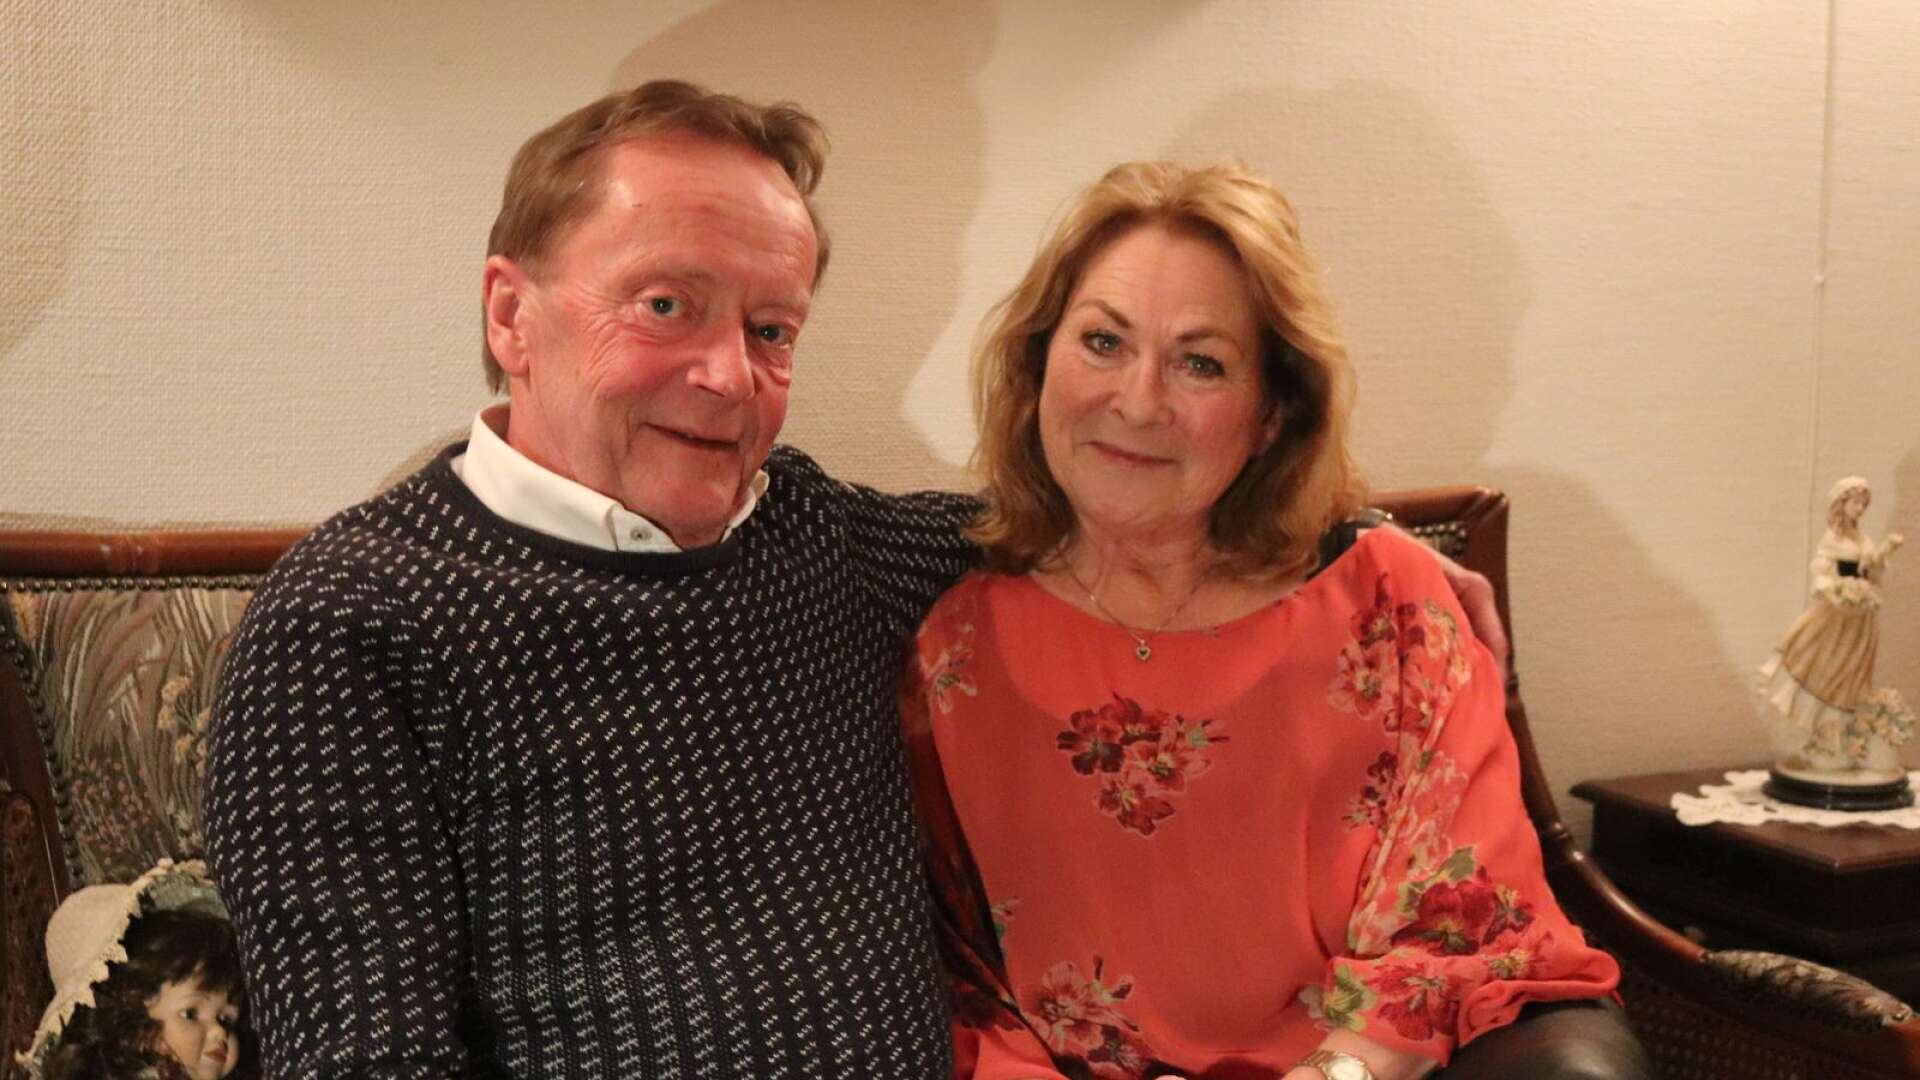 Crister Gutborn och Elisabeth Spilhaug Gutborn berättar sin osannolika kärlekshistoria. De var tillsammans och förlovade som unga, innan de skildes åt 1976. Efter 40 år isär hittade de tillbaka till varandra och nu är de gifta och lyckliga.